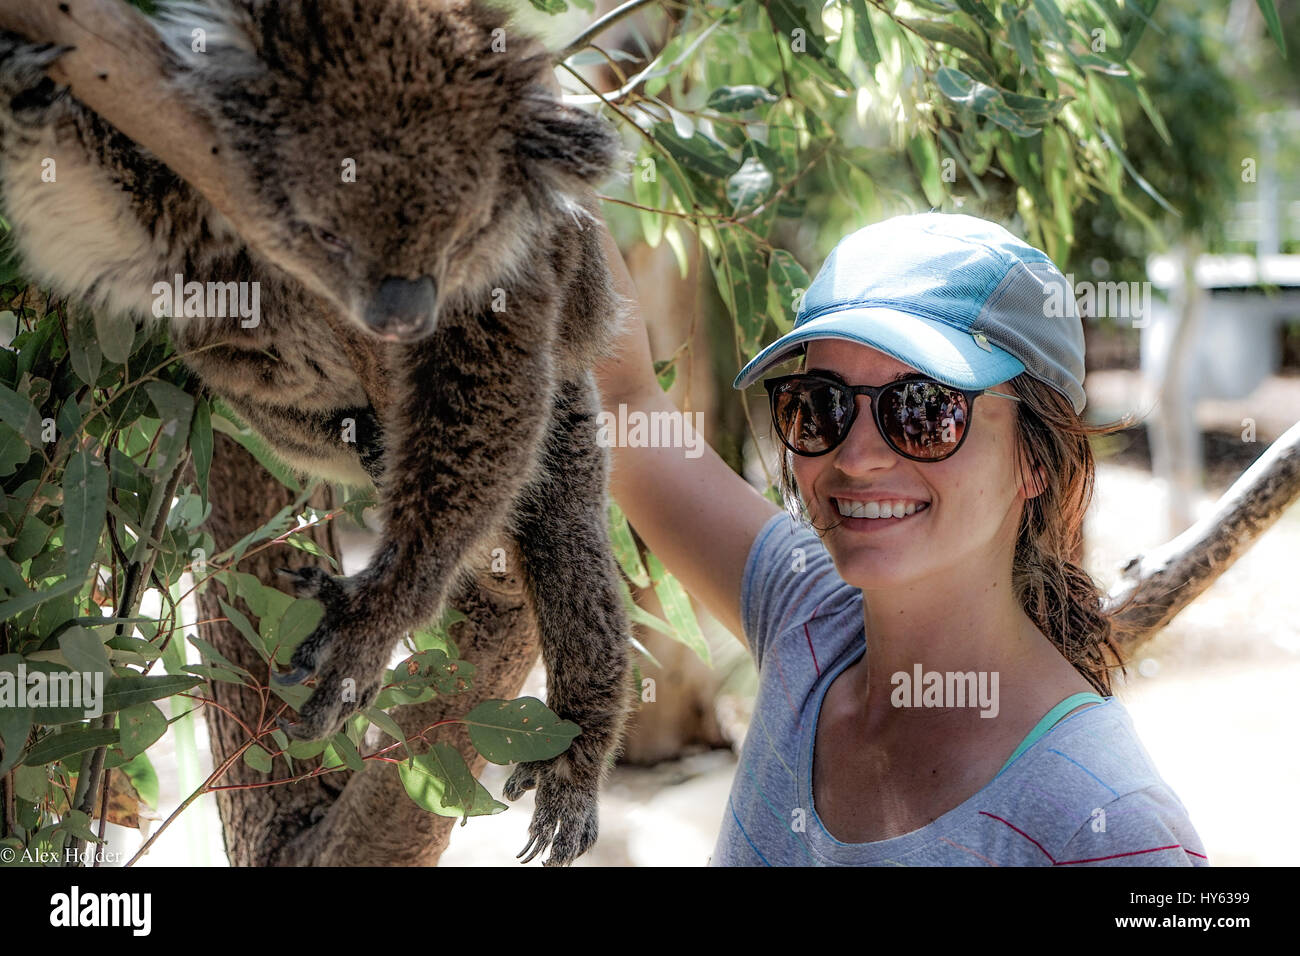 Una joven posa con un perezoso Koala en un día caluroso en el oeste de Australia. El pelaje del koala es suave y difusa y la chica sonriente es amplia. Foto de stock